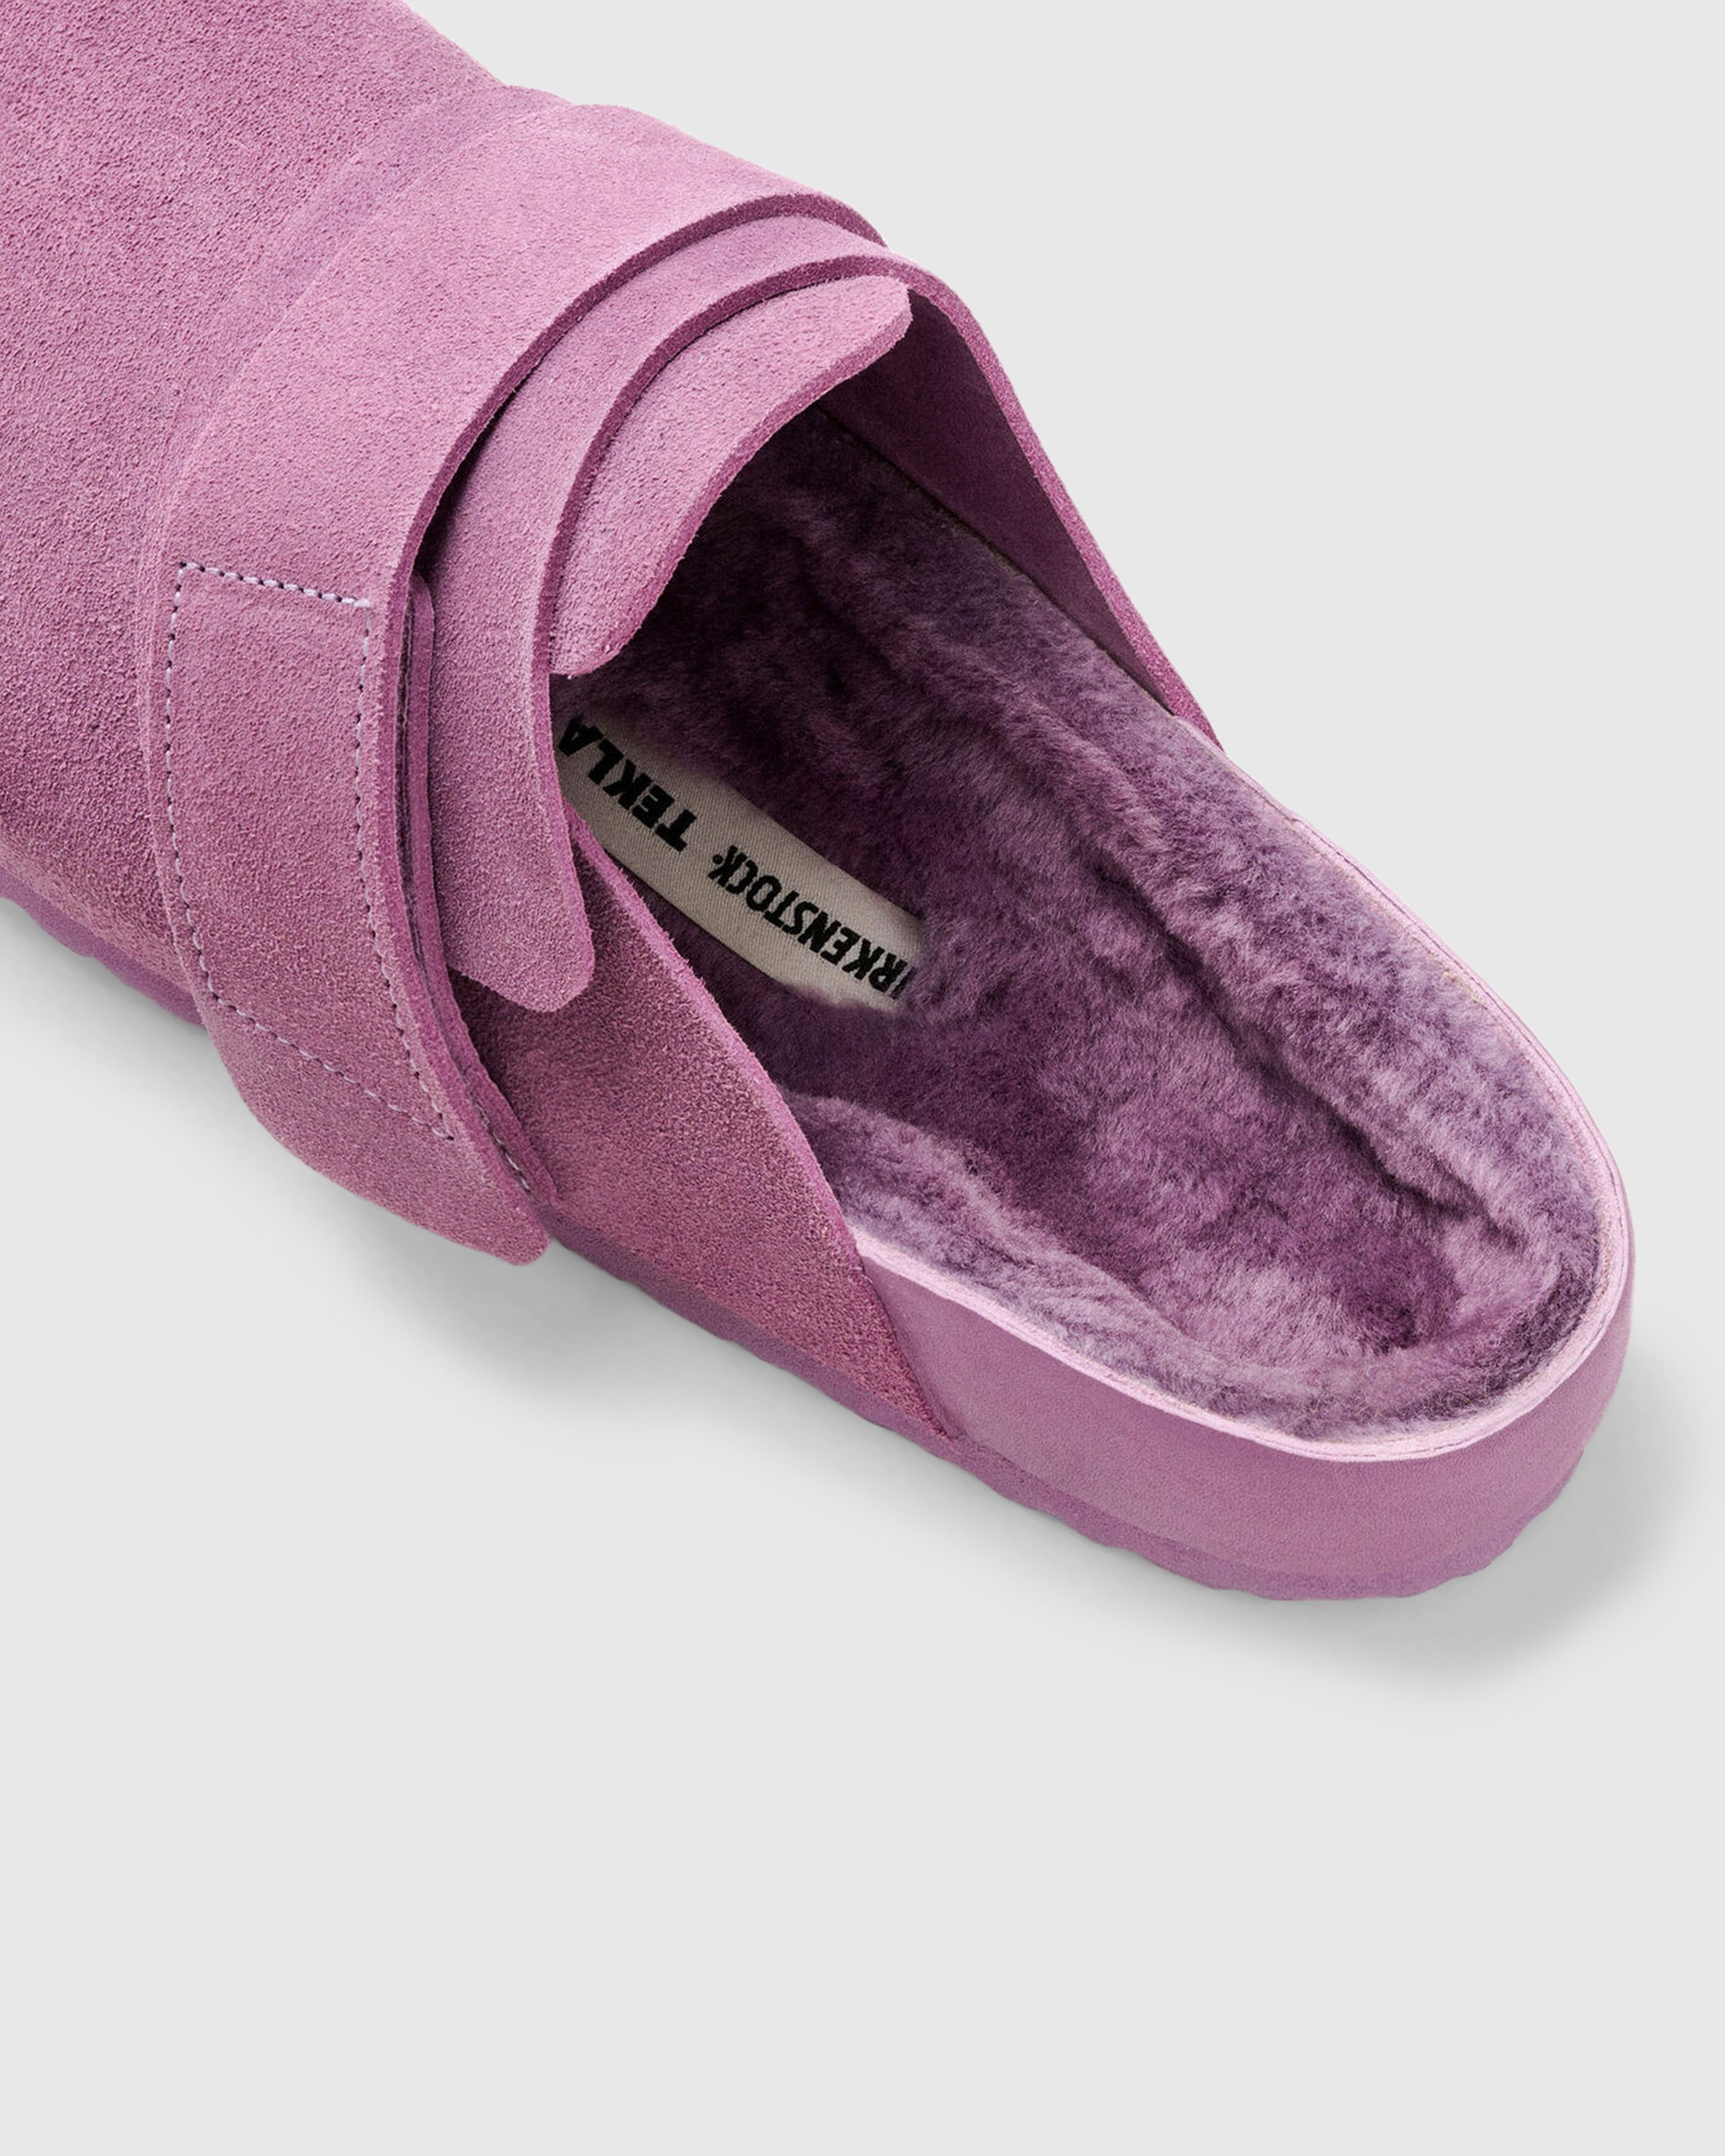 Birkenstock x Tekla - Shearling Nagoya Mauve/Purple - Footwear - Purple - Image 4